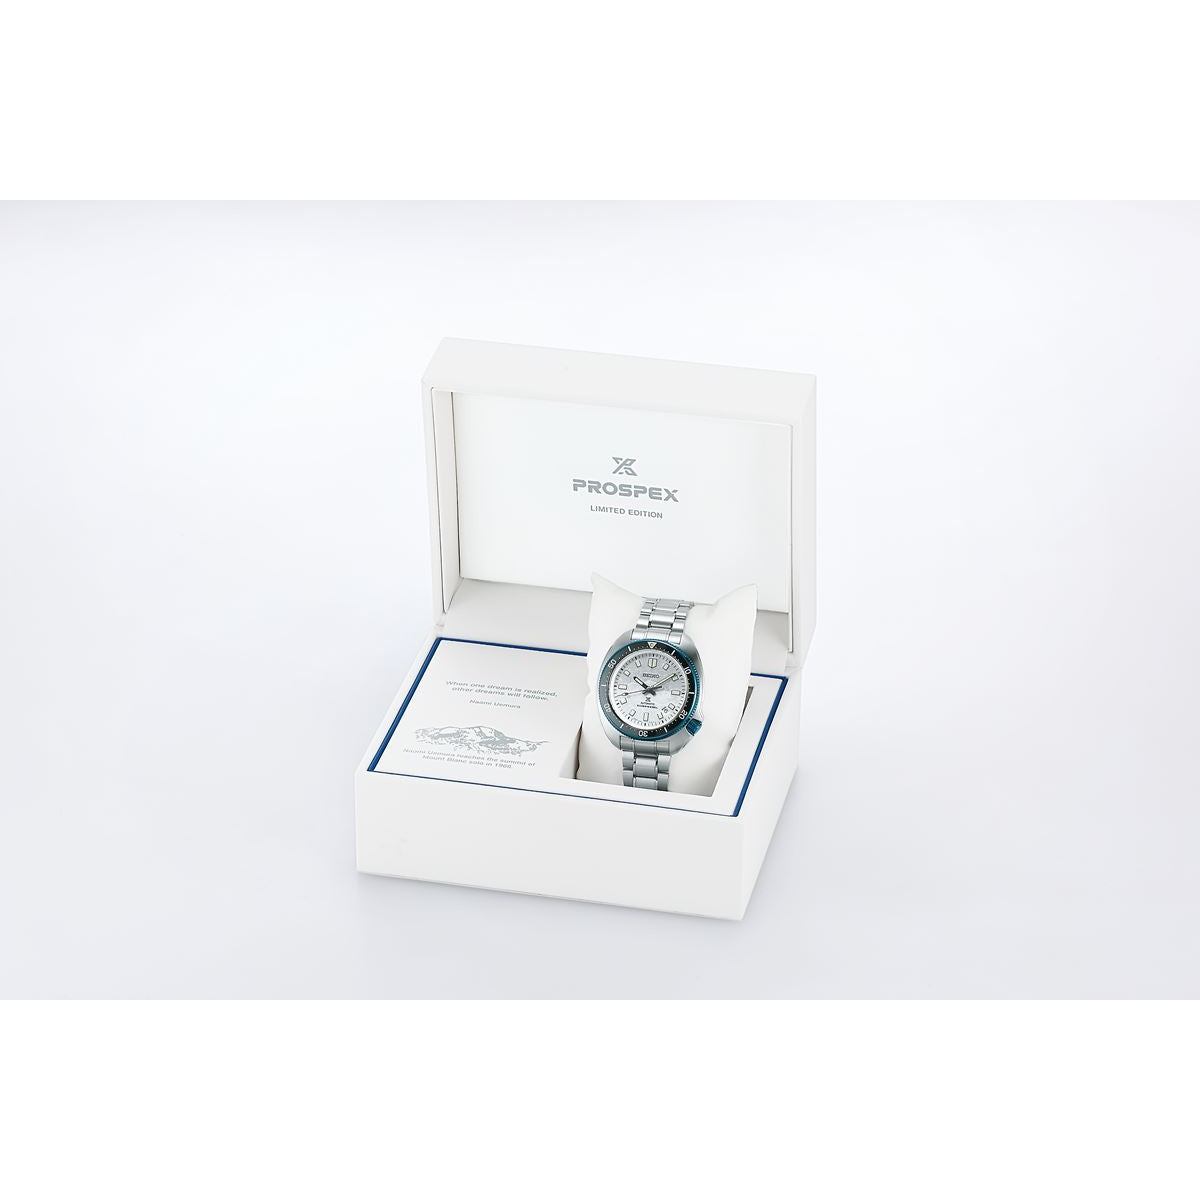 セイコー プロスペックス SEIKO PROSPEX 自動巻き メカニカル 腕時計 メンズ 1970 メカニカルダイバーズ 現代デザイン 植村直己 限定モデル SBDX057